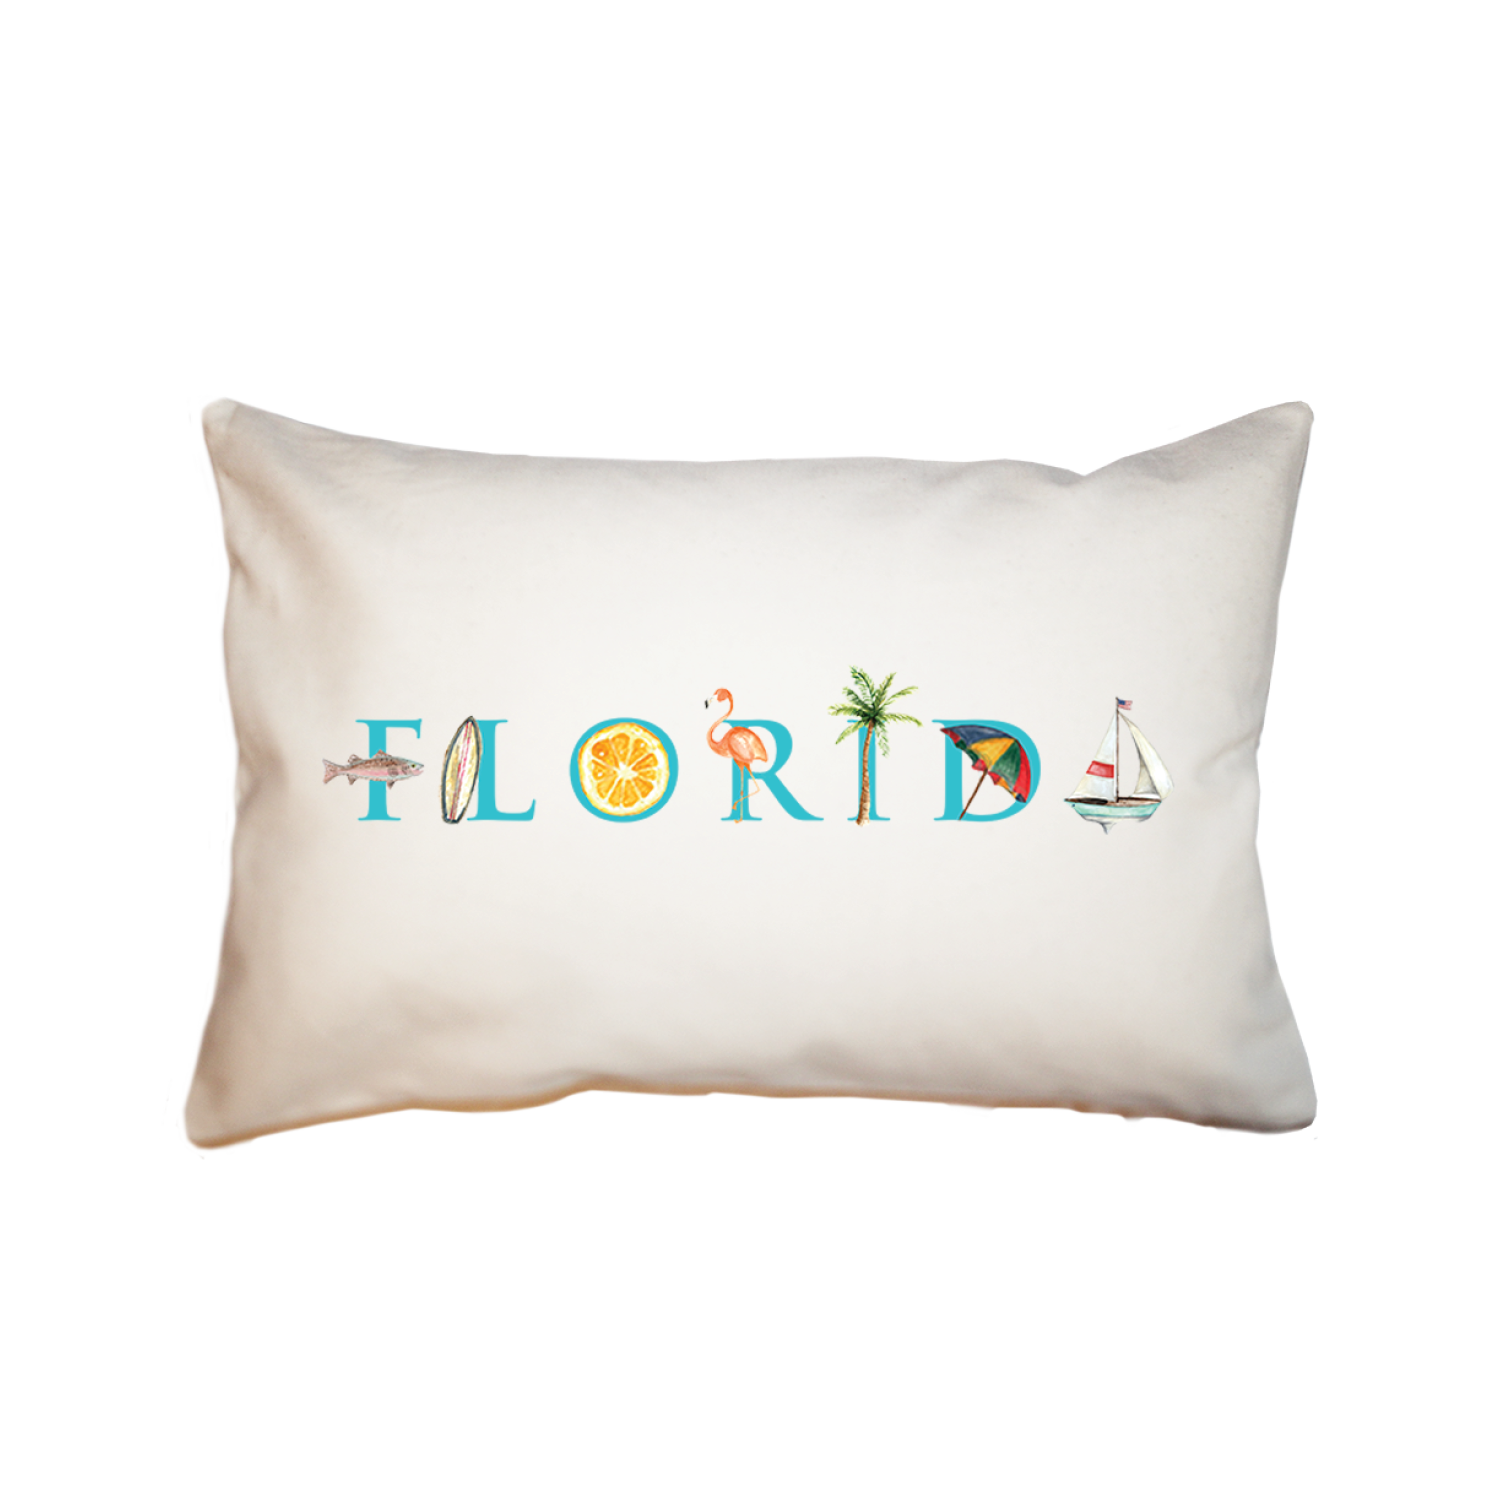 Florida large rectangle pillow